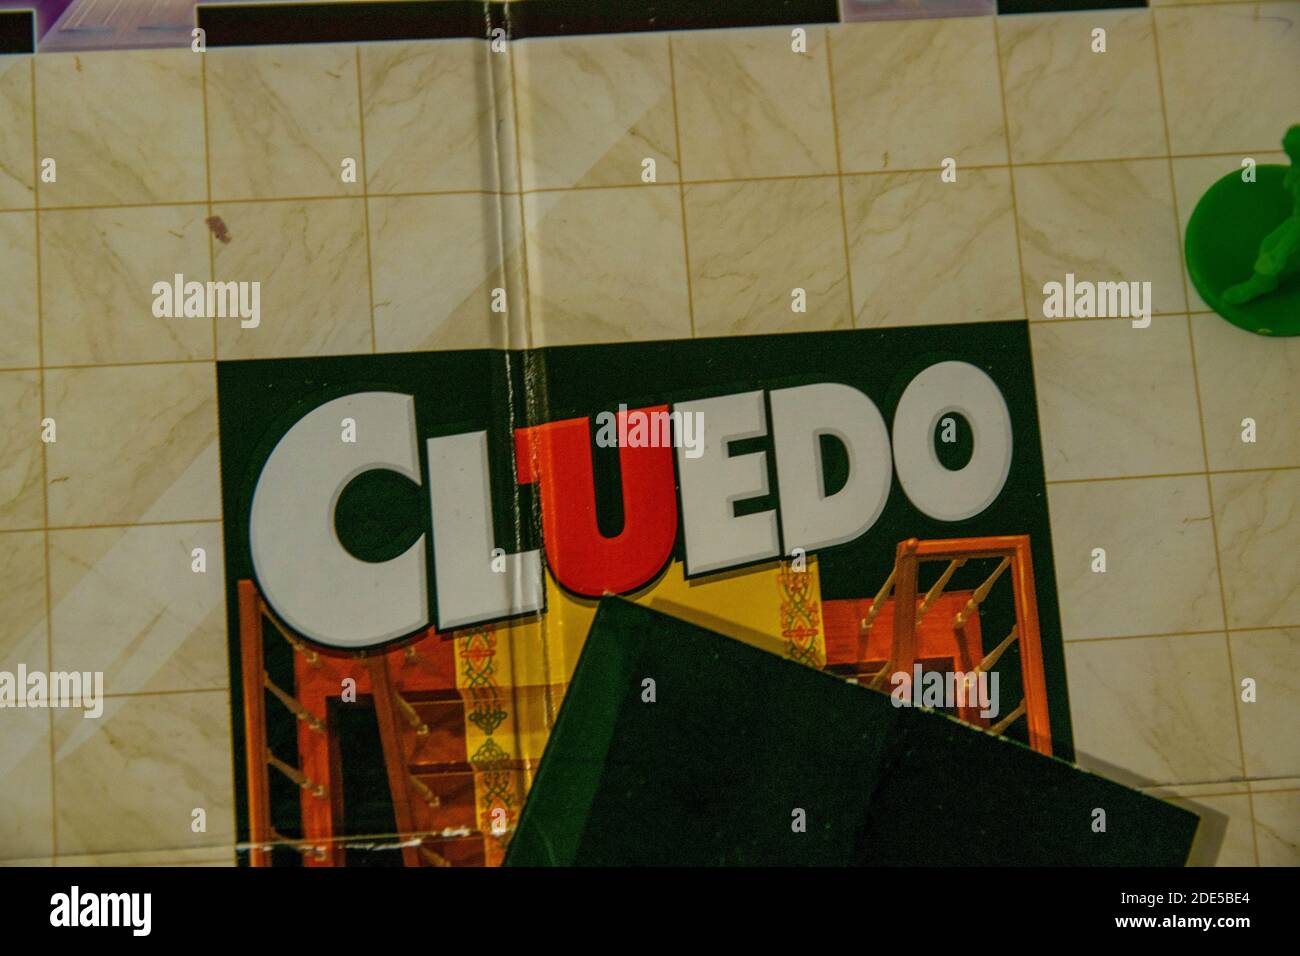 Durham, Regno Unito - 5 aprile 2020: Cluedo è un classico gioco da tavolo detective mistero assassinio prodotto per la prima volta da Waddington's, attualmente di proprietà di Hasbro. CRIM Foto Stock